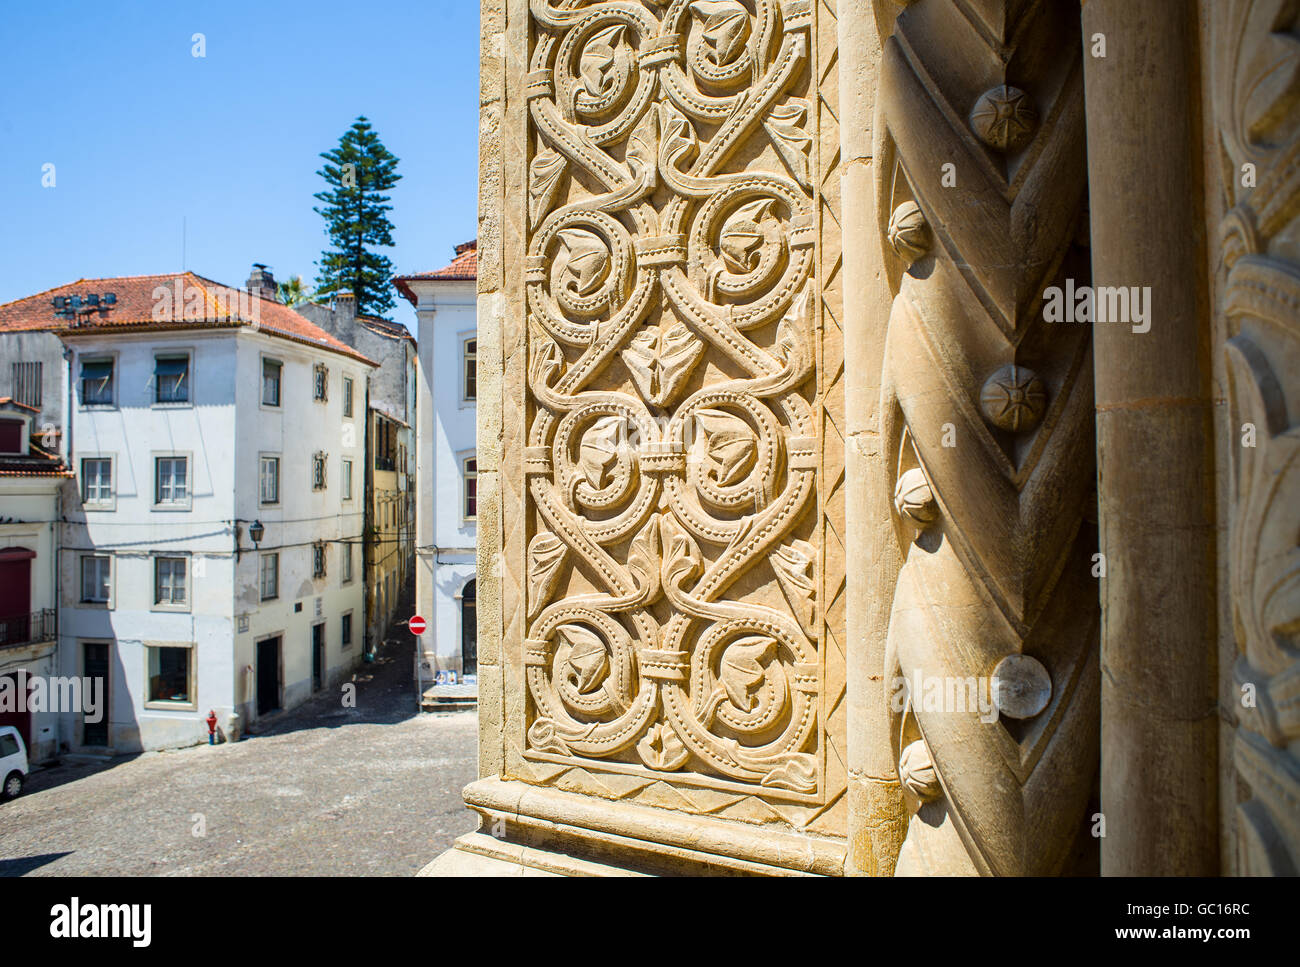 Dettaglio ingresso arco di sé Velha, Santa Maria de Coimbra, la vecchia cattedrale di Coimbra. Portogallo Foto Stock